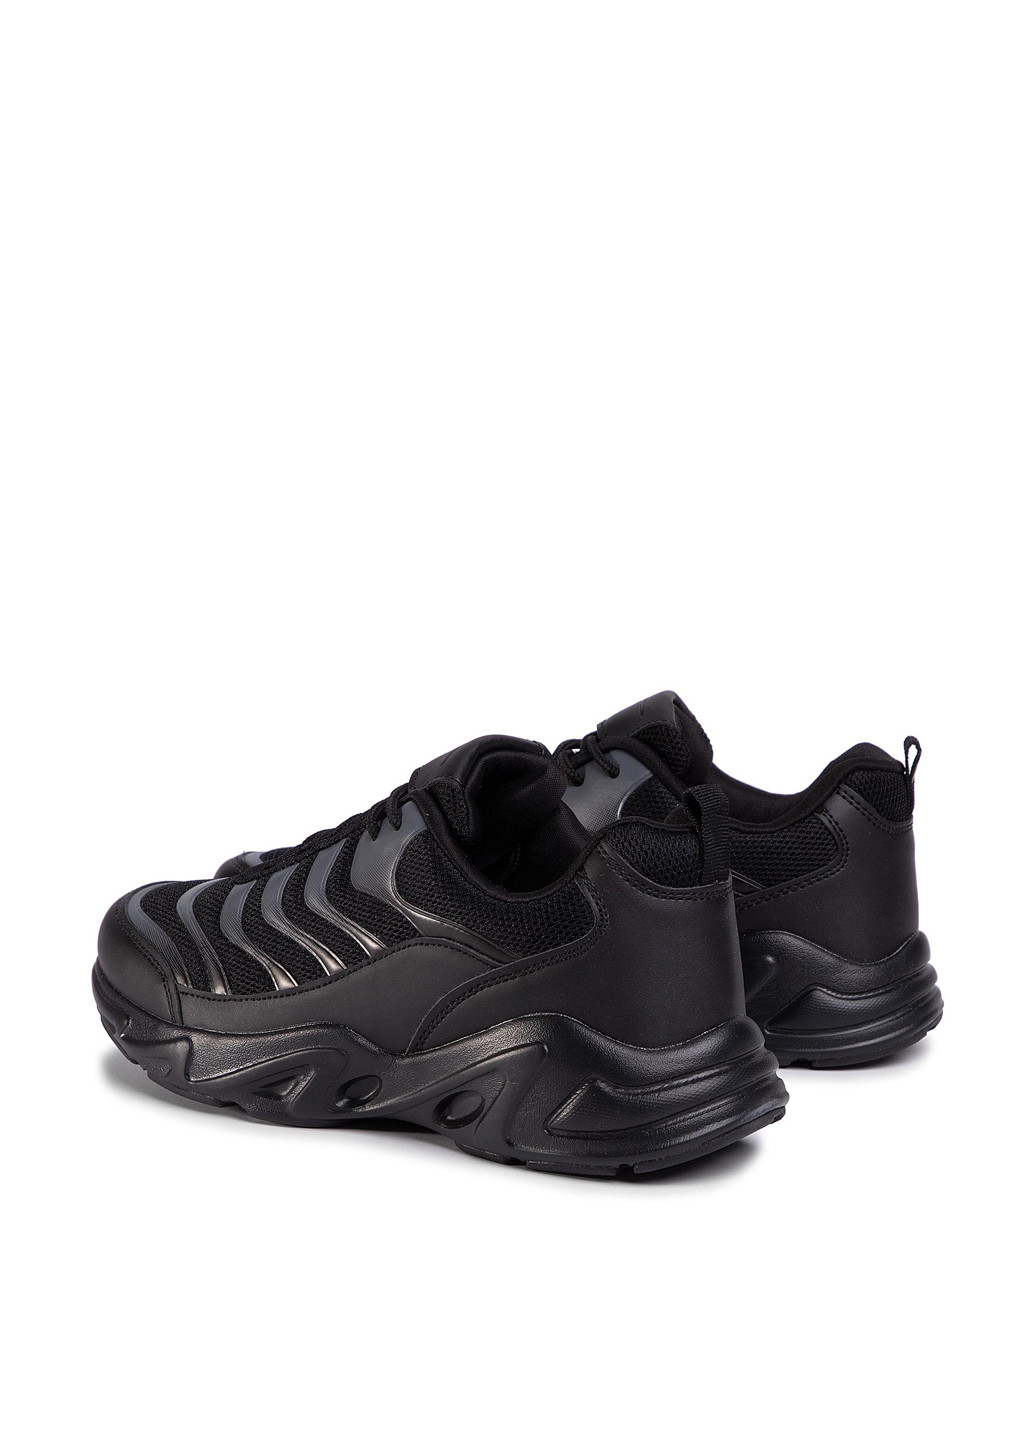 Черные демисезонные кросівки mp40-9614z Sprandi